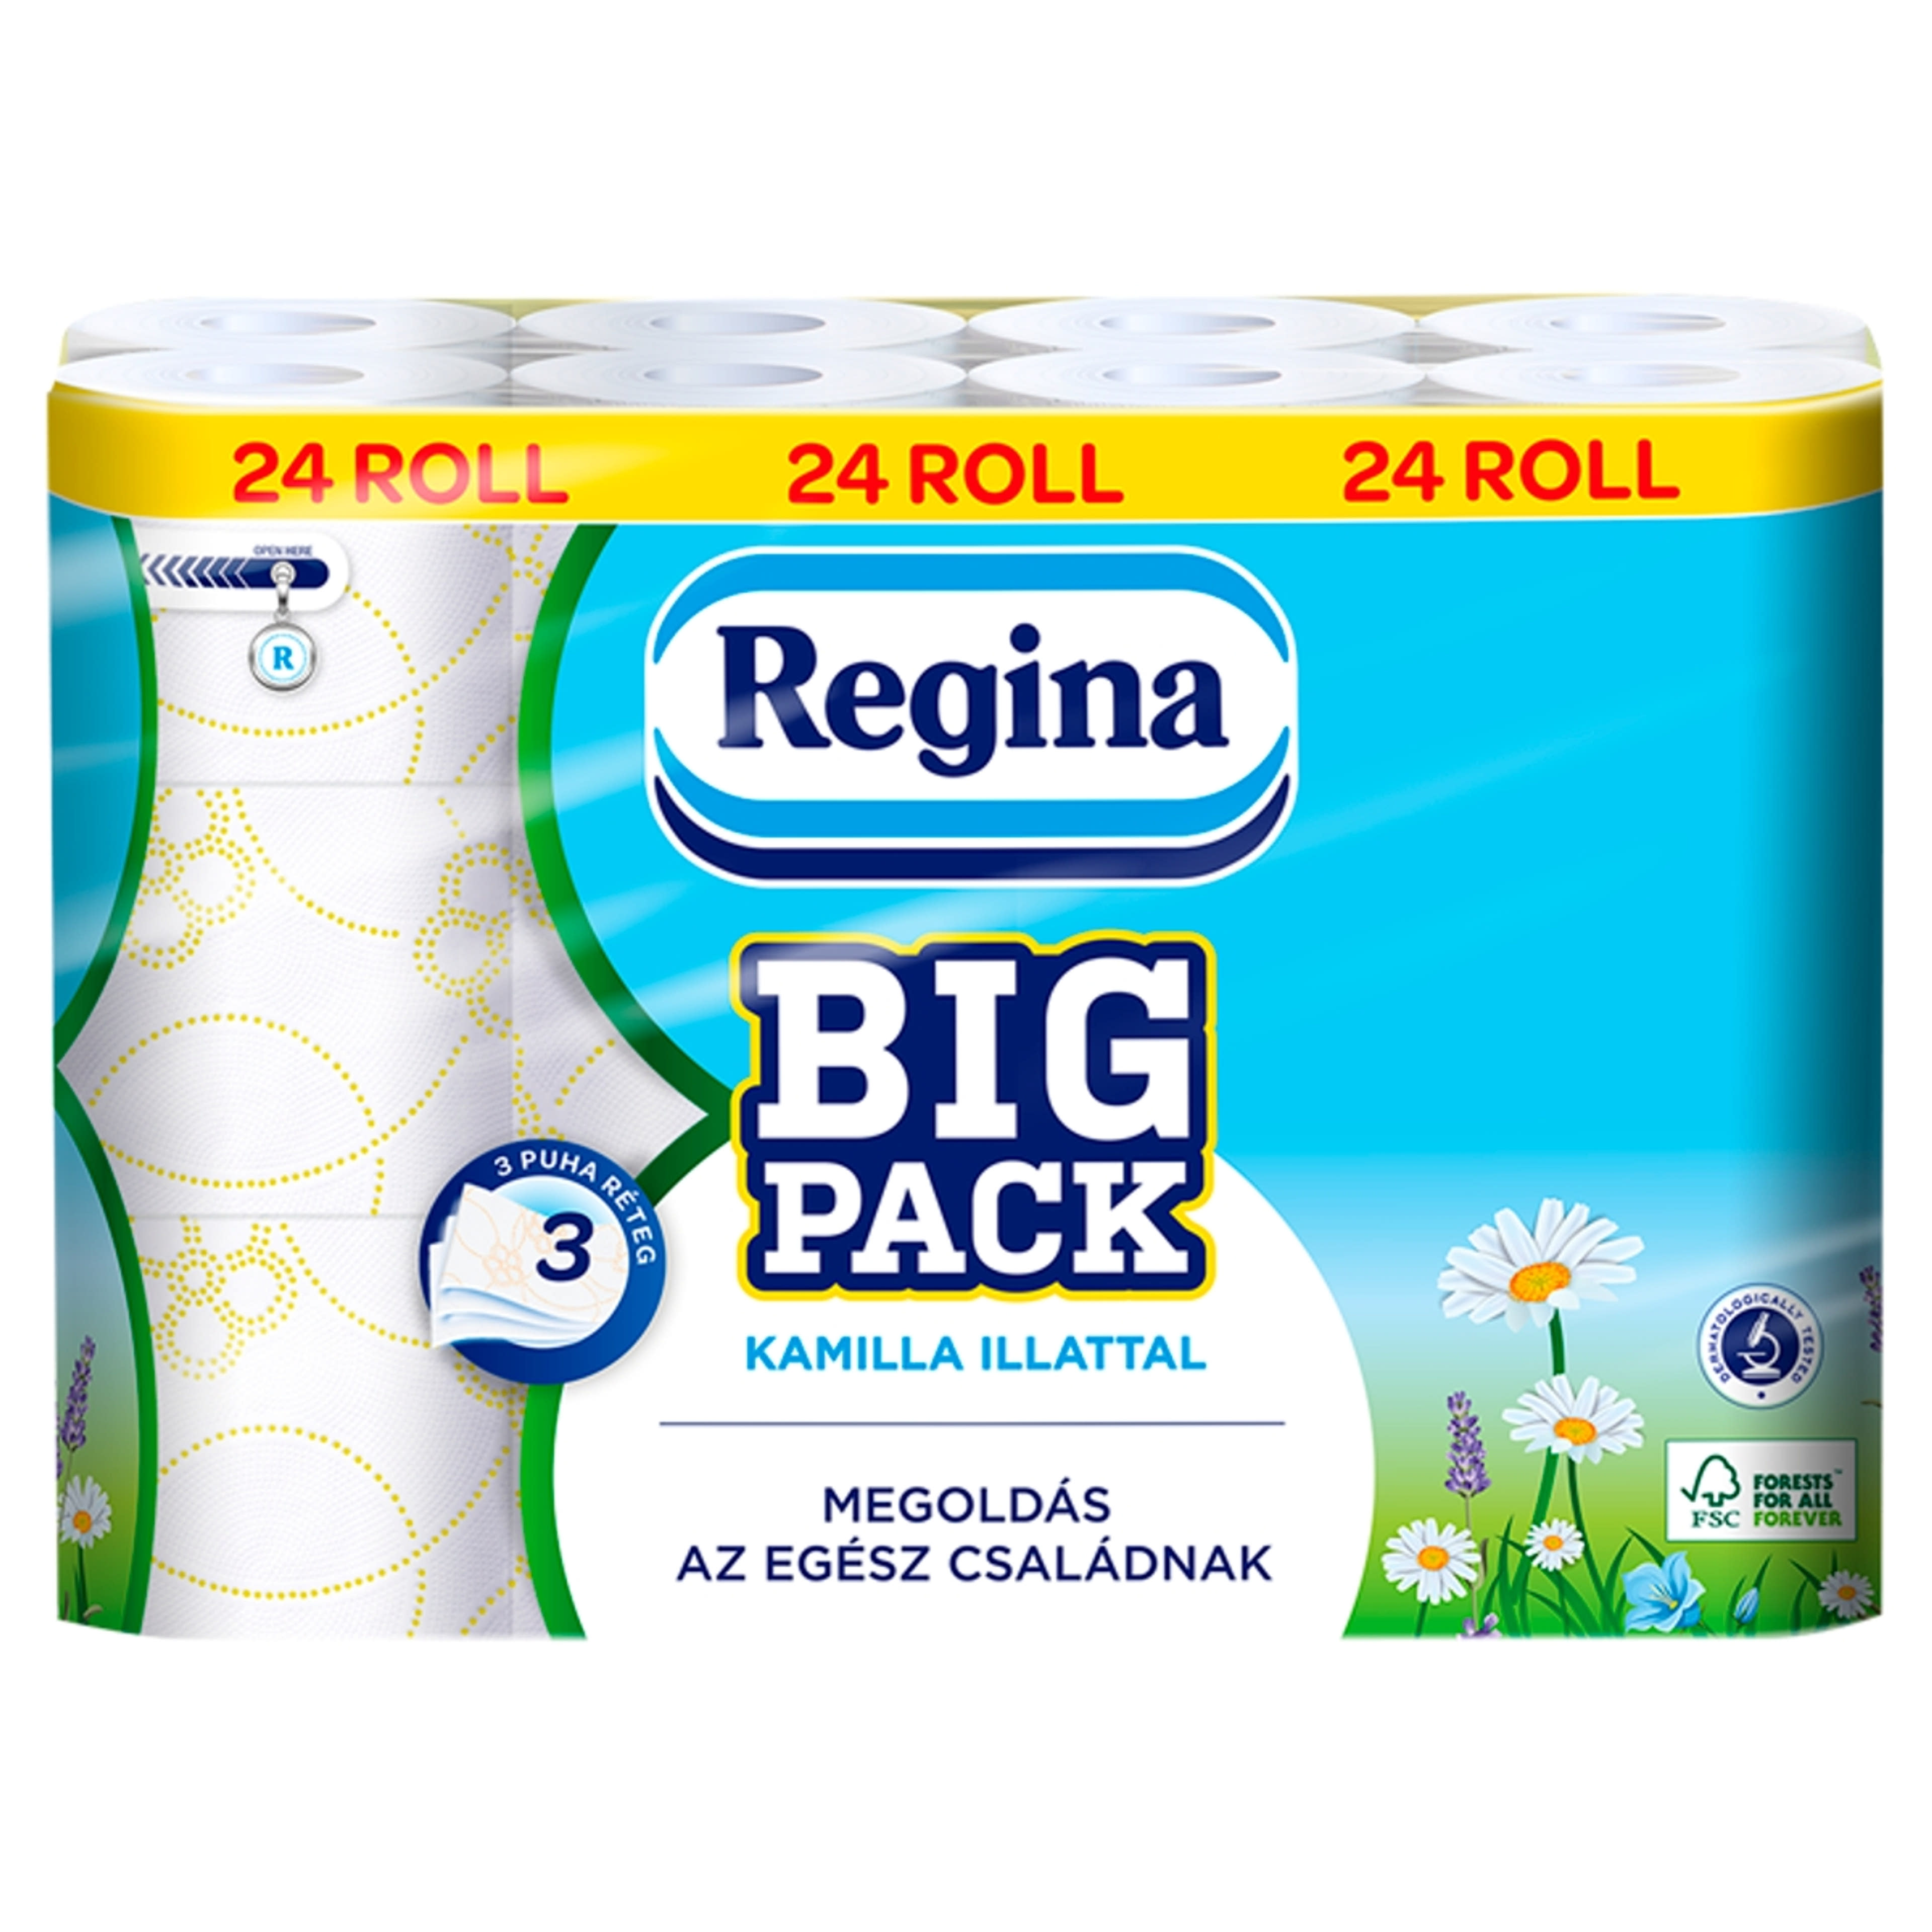 Regina Big Pack toalettpapír 3 rétegű - 24 db